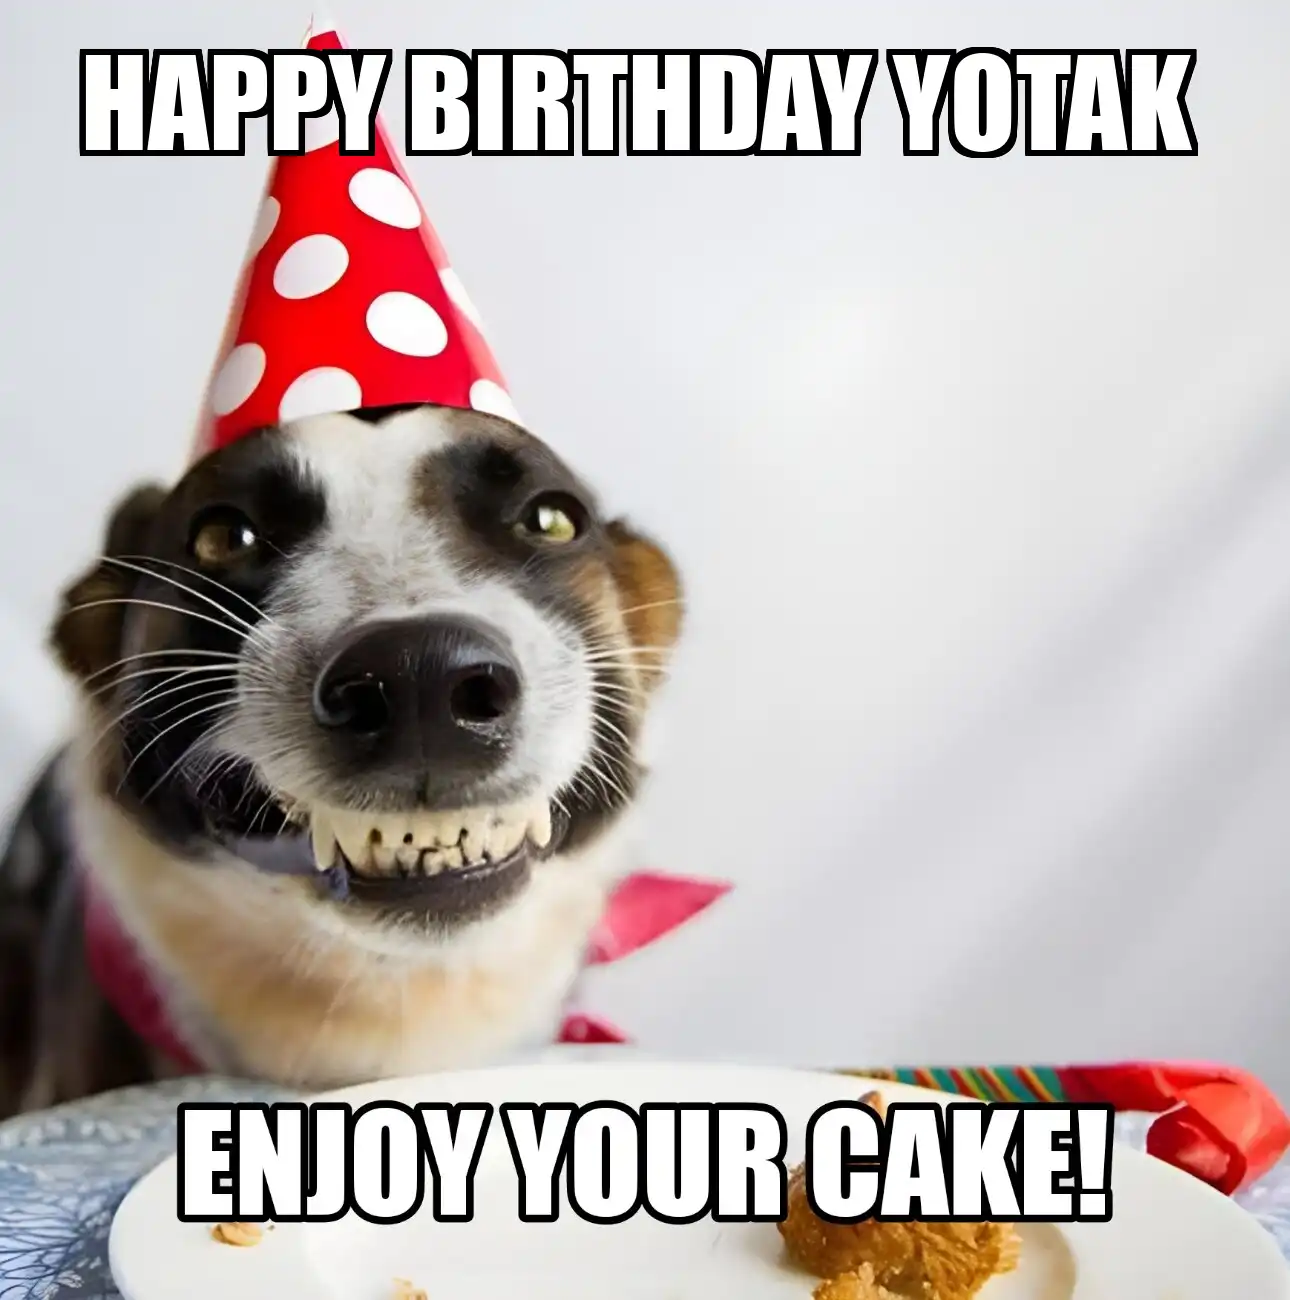 Happy Birthday Yotak Enjoy Your Cake Dog Meme